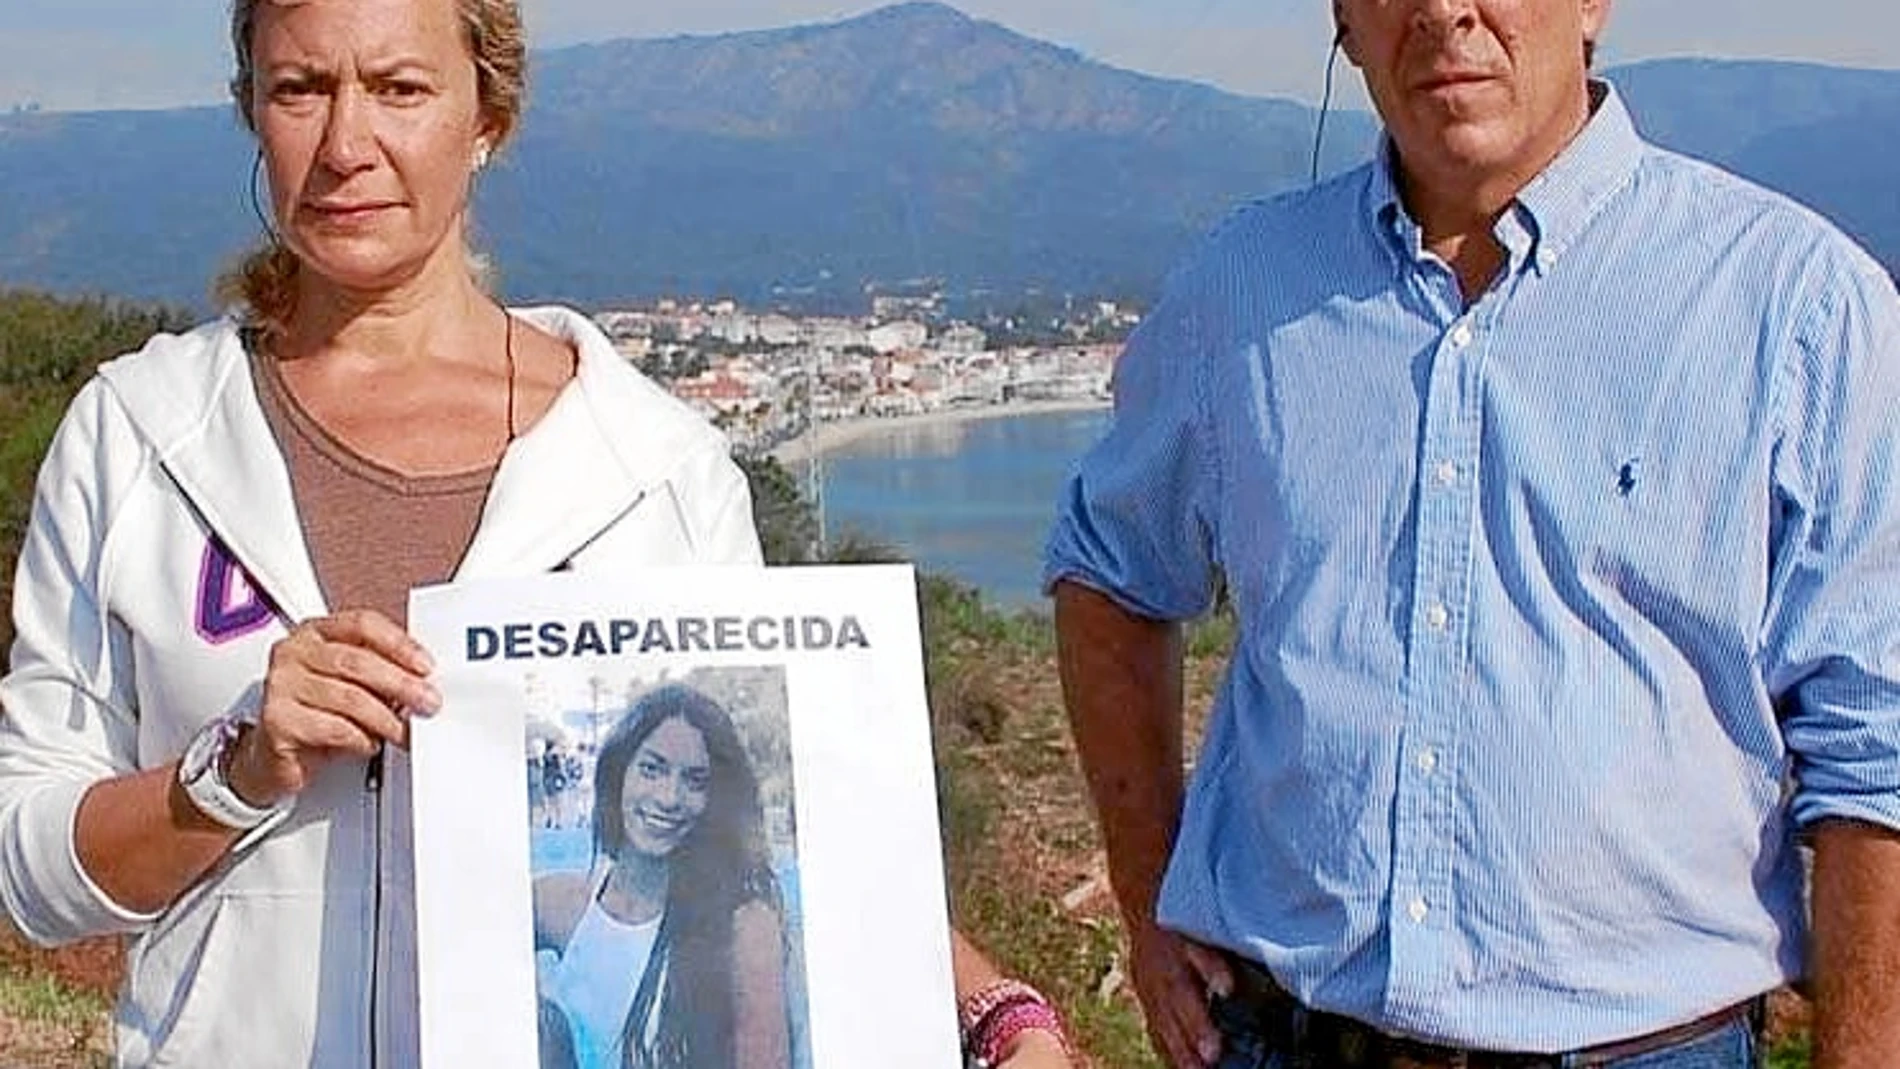 Con la hija mayor desaparecida, Juan Carlos Quer y Diana López Pinel, divorciados desde hace años, han librado una batalla pública por la custodia de su hija menor, Valeria.